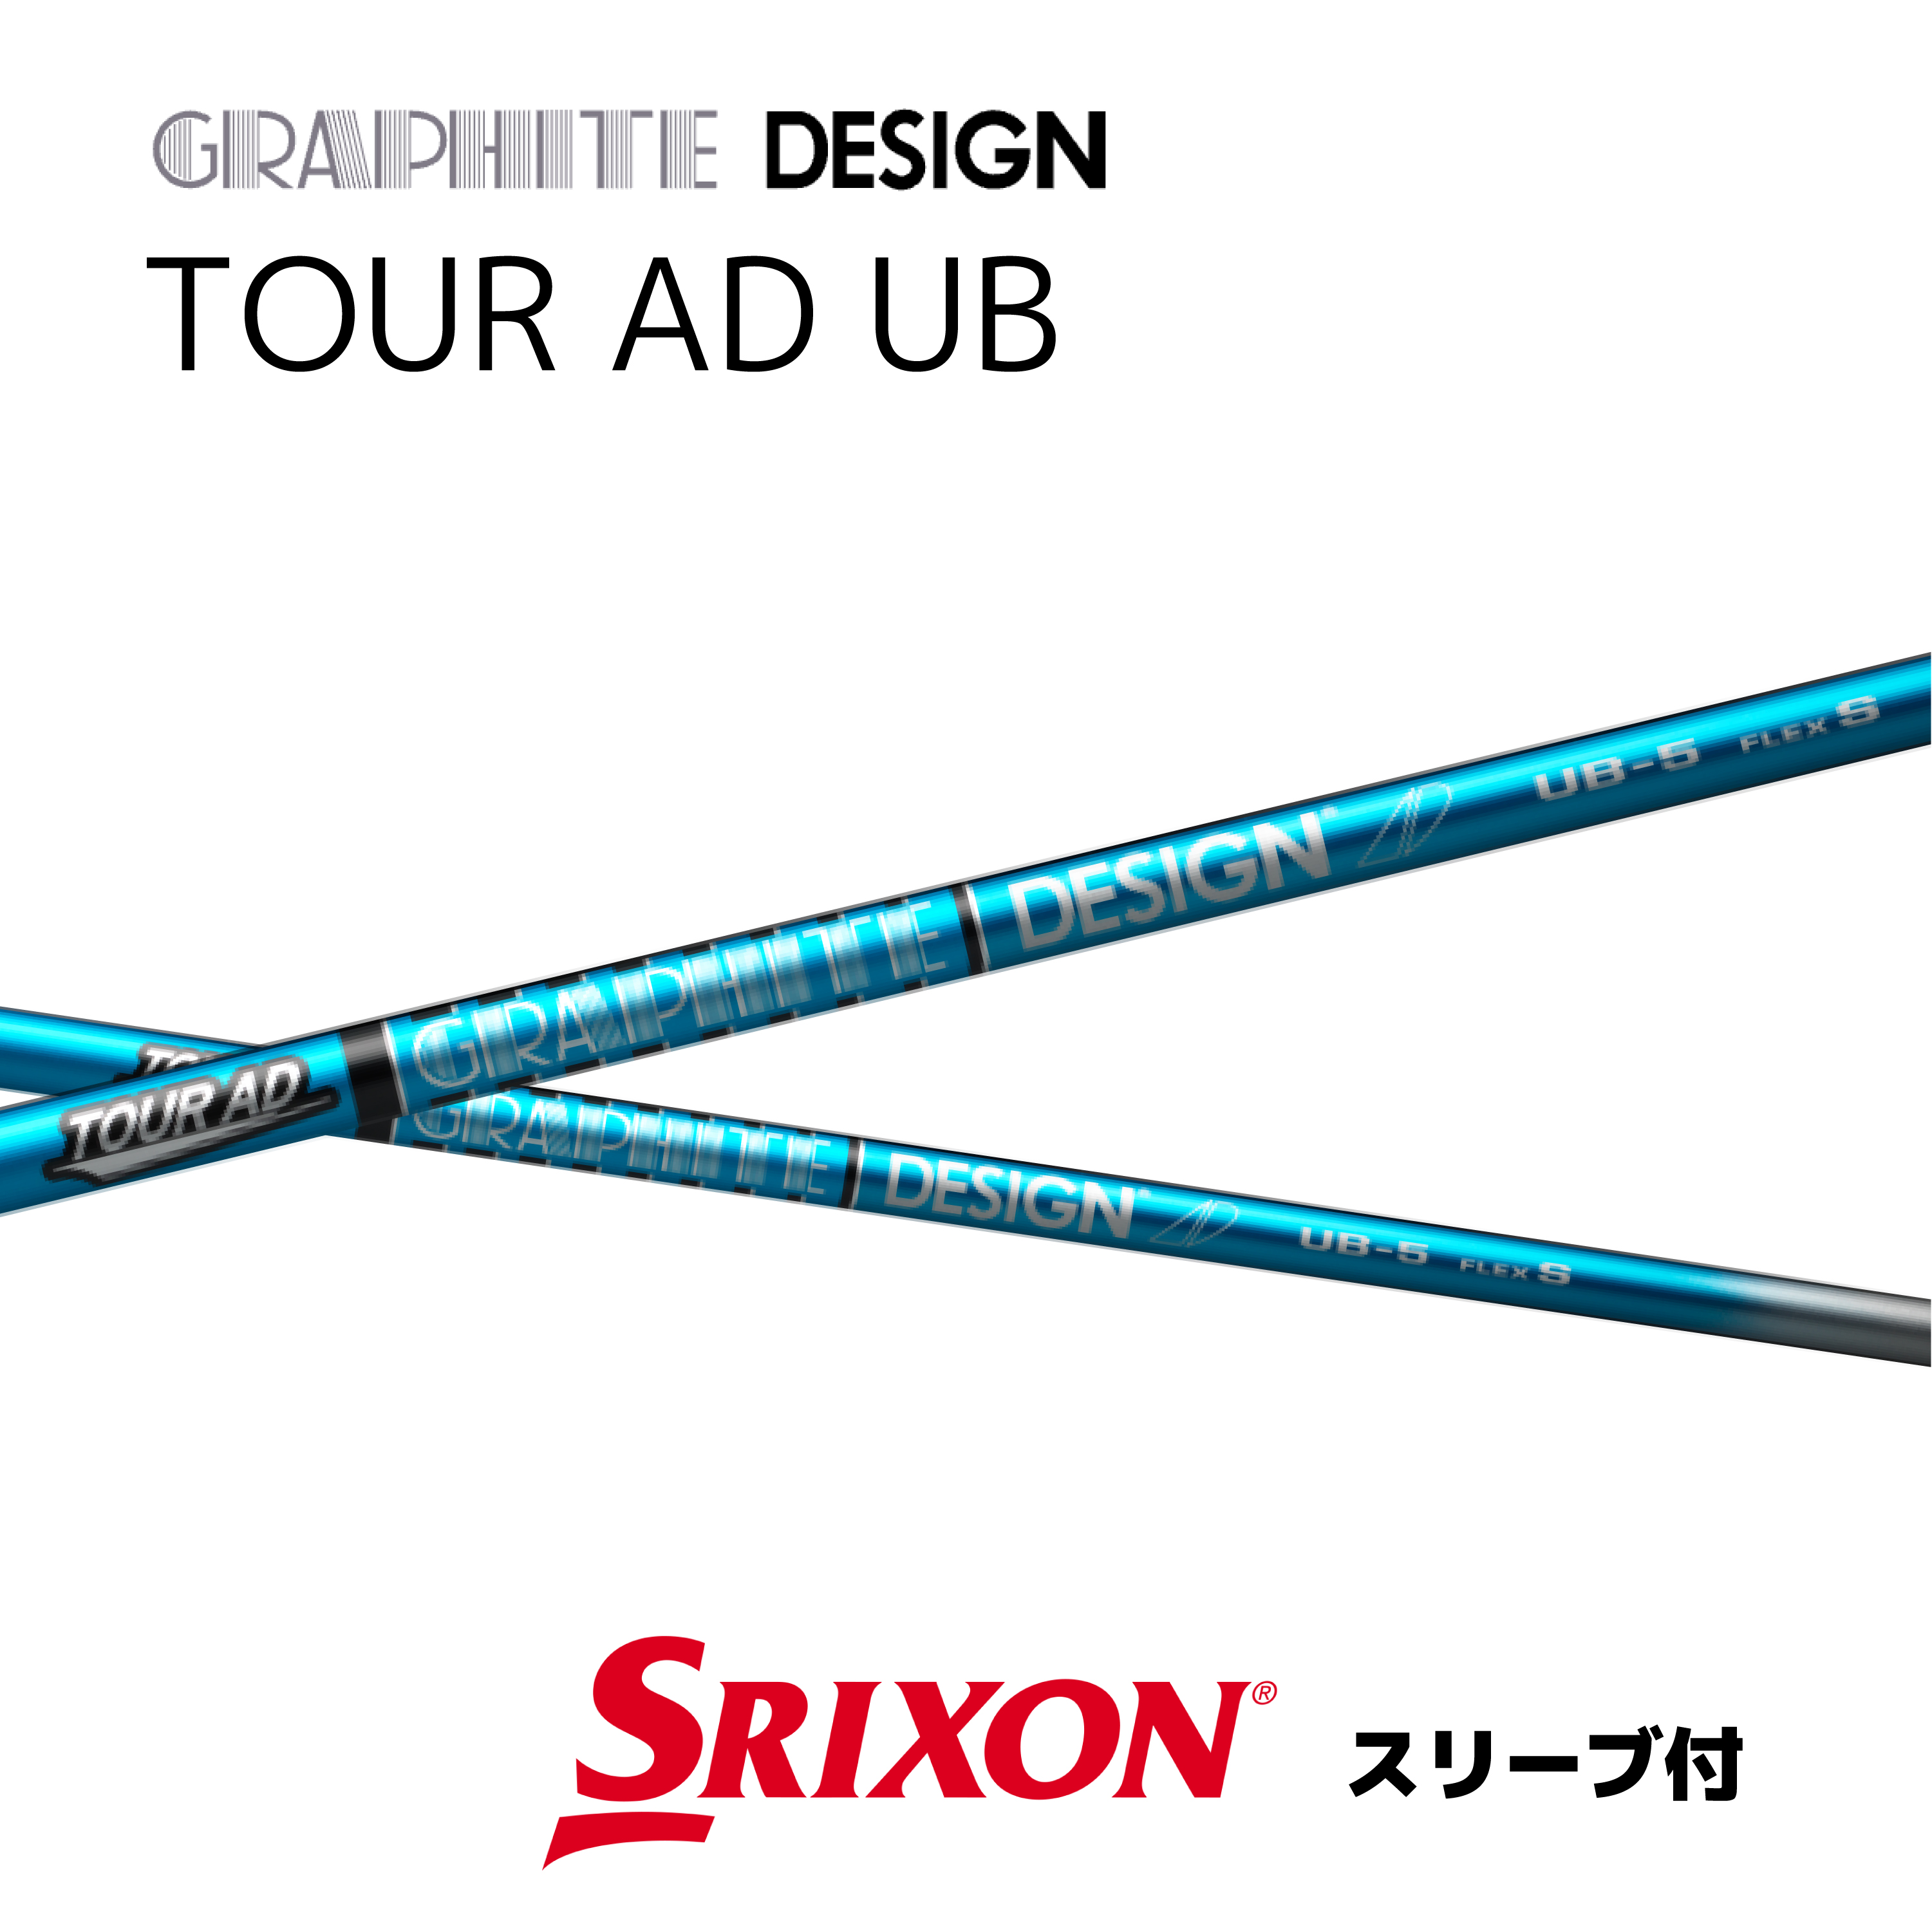 TOUR AD UB S キャロウェイ スリーブ グラファイトデザイン ゴルフ